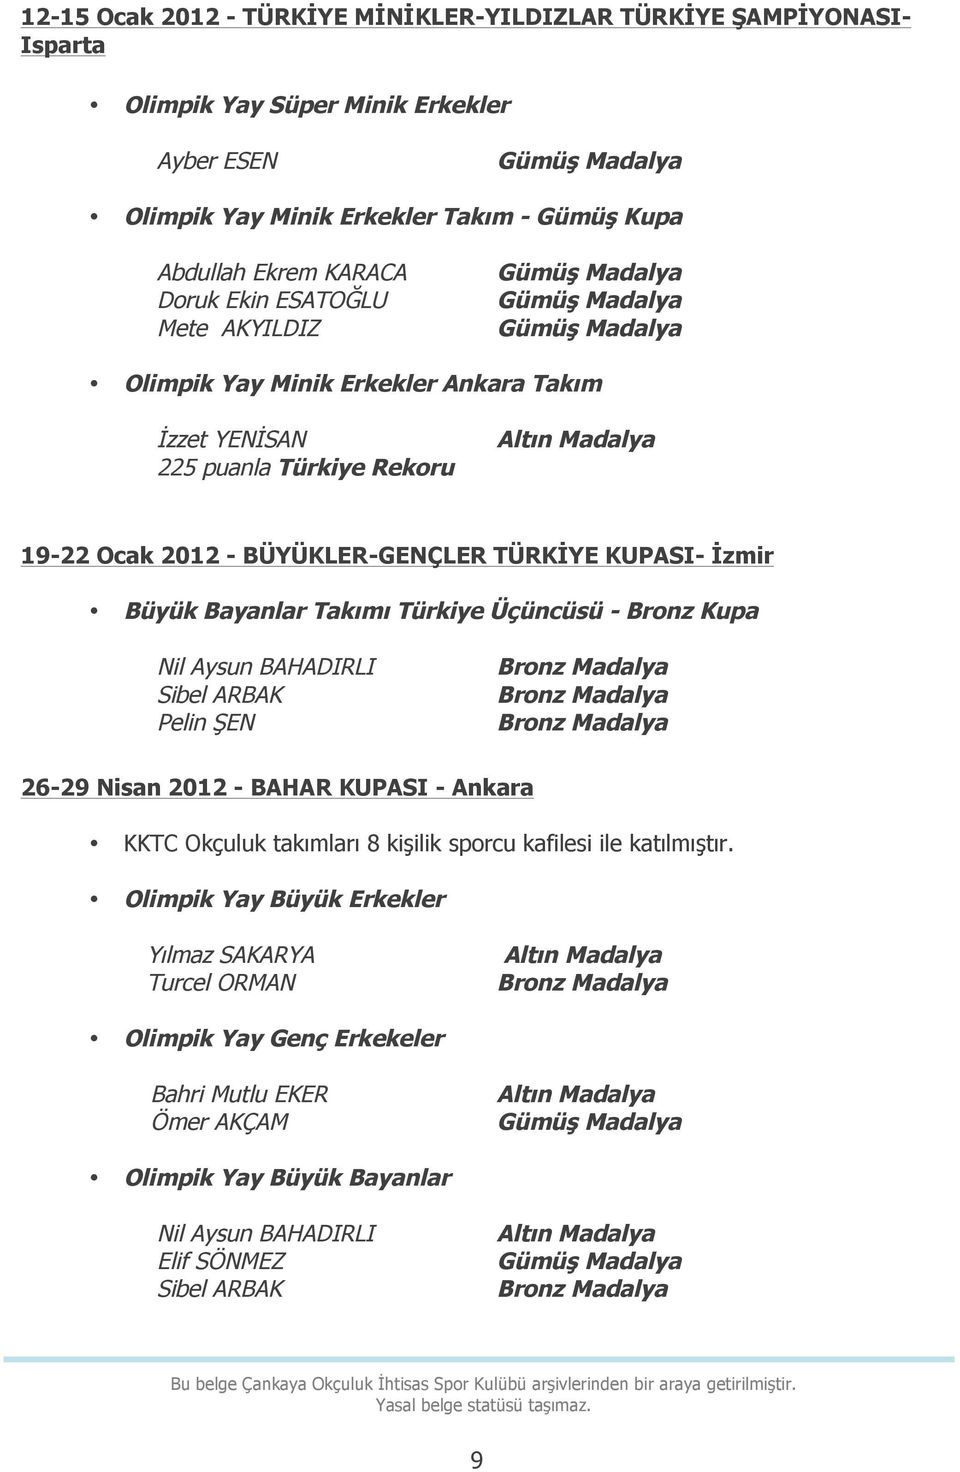 Bayanlar Takımı Türkiye Üçüncüsü - Bronz Kupa Nil Aysun BAHADIRLI Sibel ARBAK Pelin ŞEN 26-29 Nisan 2012 - BAHAR KUPASI - Ankara KKTC Okçuluk takımları 8 kişilik sporcu kafilesi ile